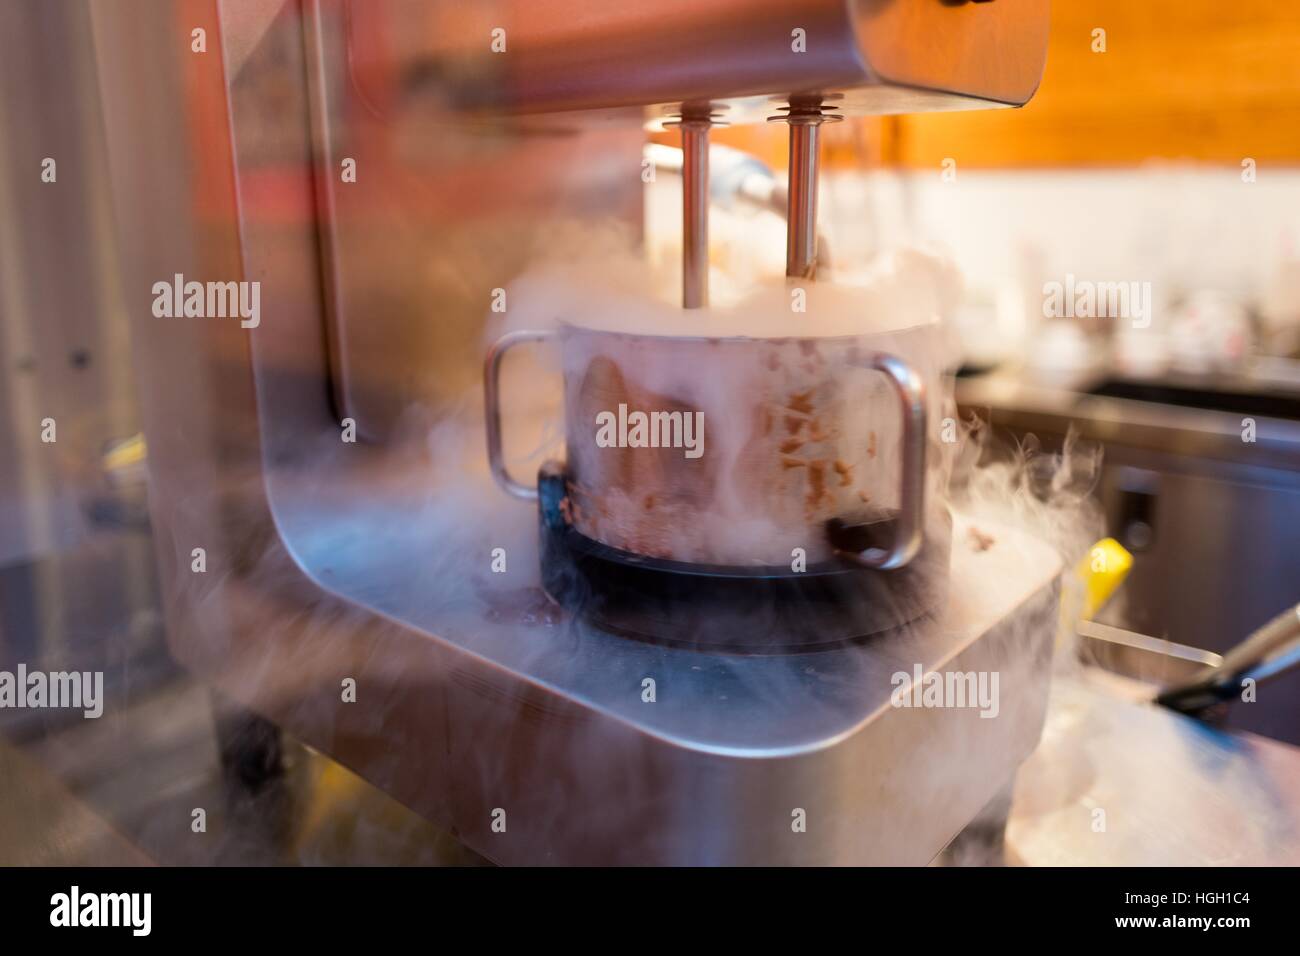 Utiliza una máquina especial para churn helado a través de nitrógeno líquido, Lafayette, California, 2016 Foto de stock